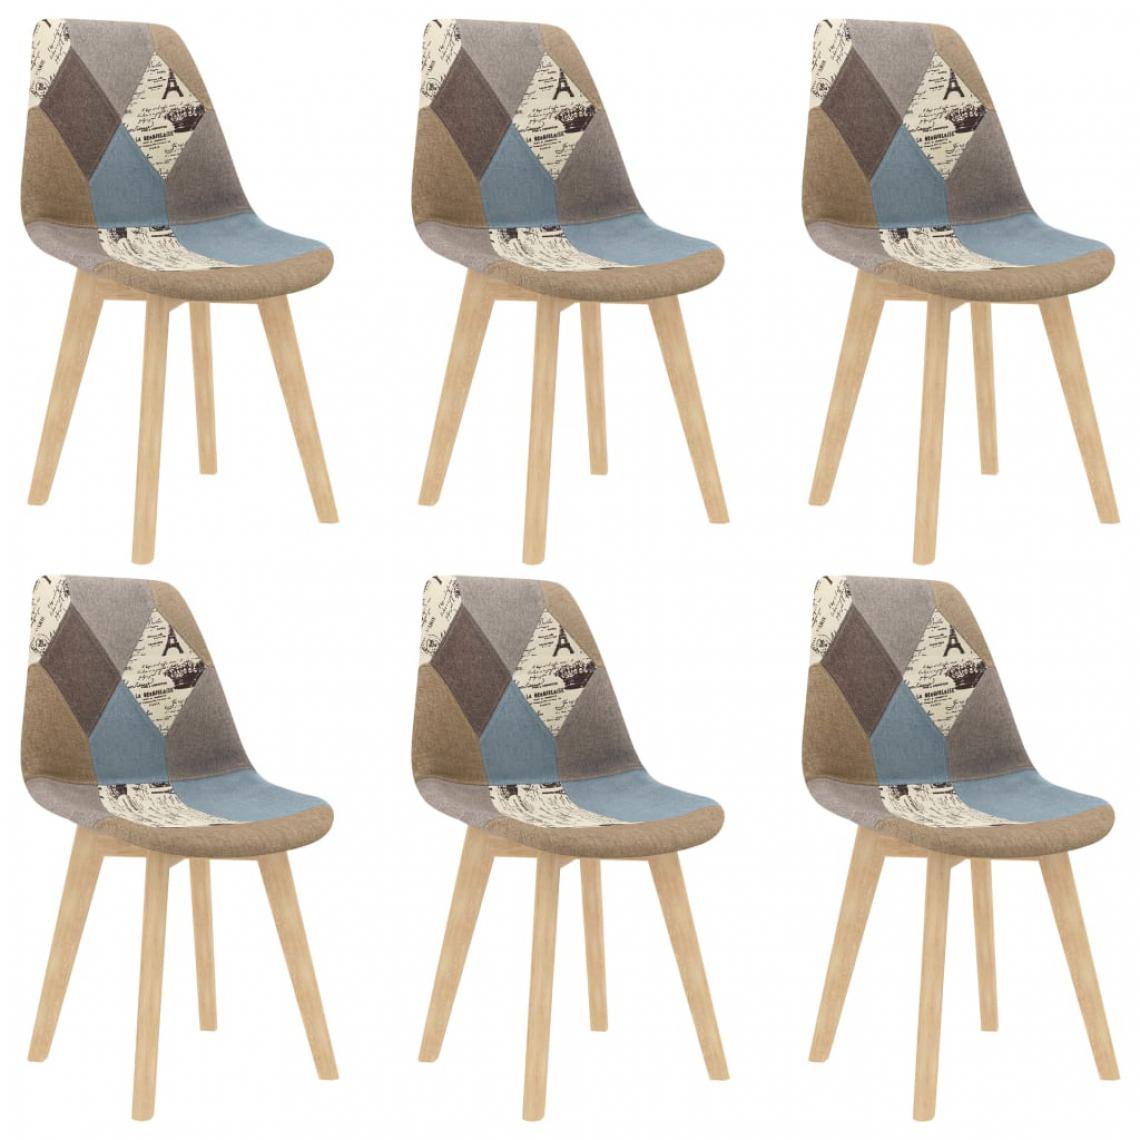 Chunhelife - Chunhelife Chaises de salle à manger 6 pcs Design de patchwork Gris Tissu - Chaises